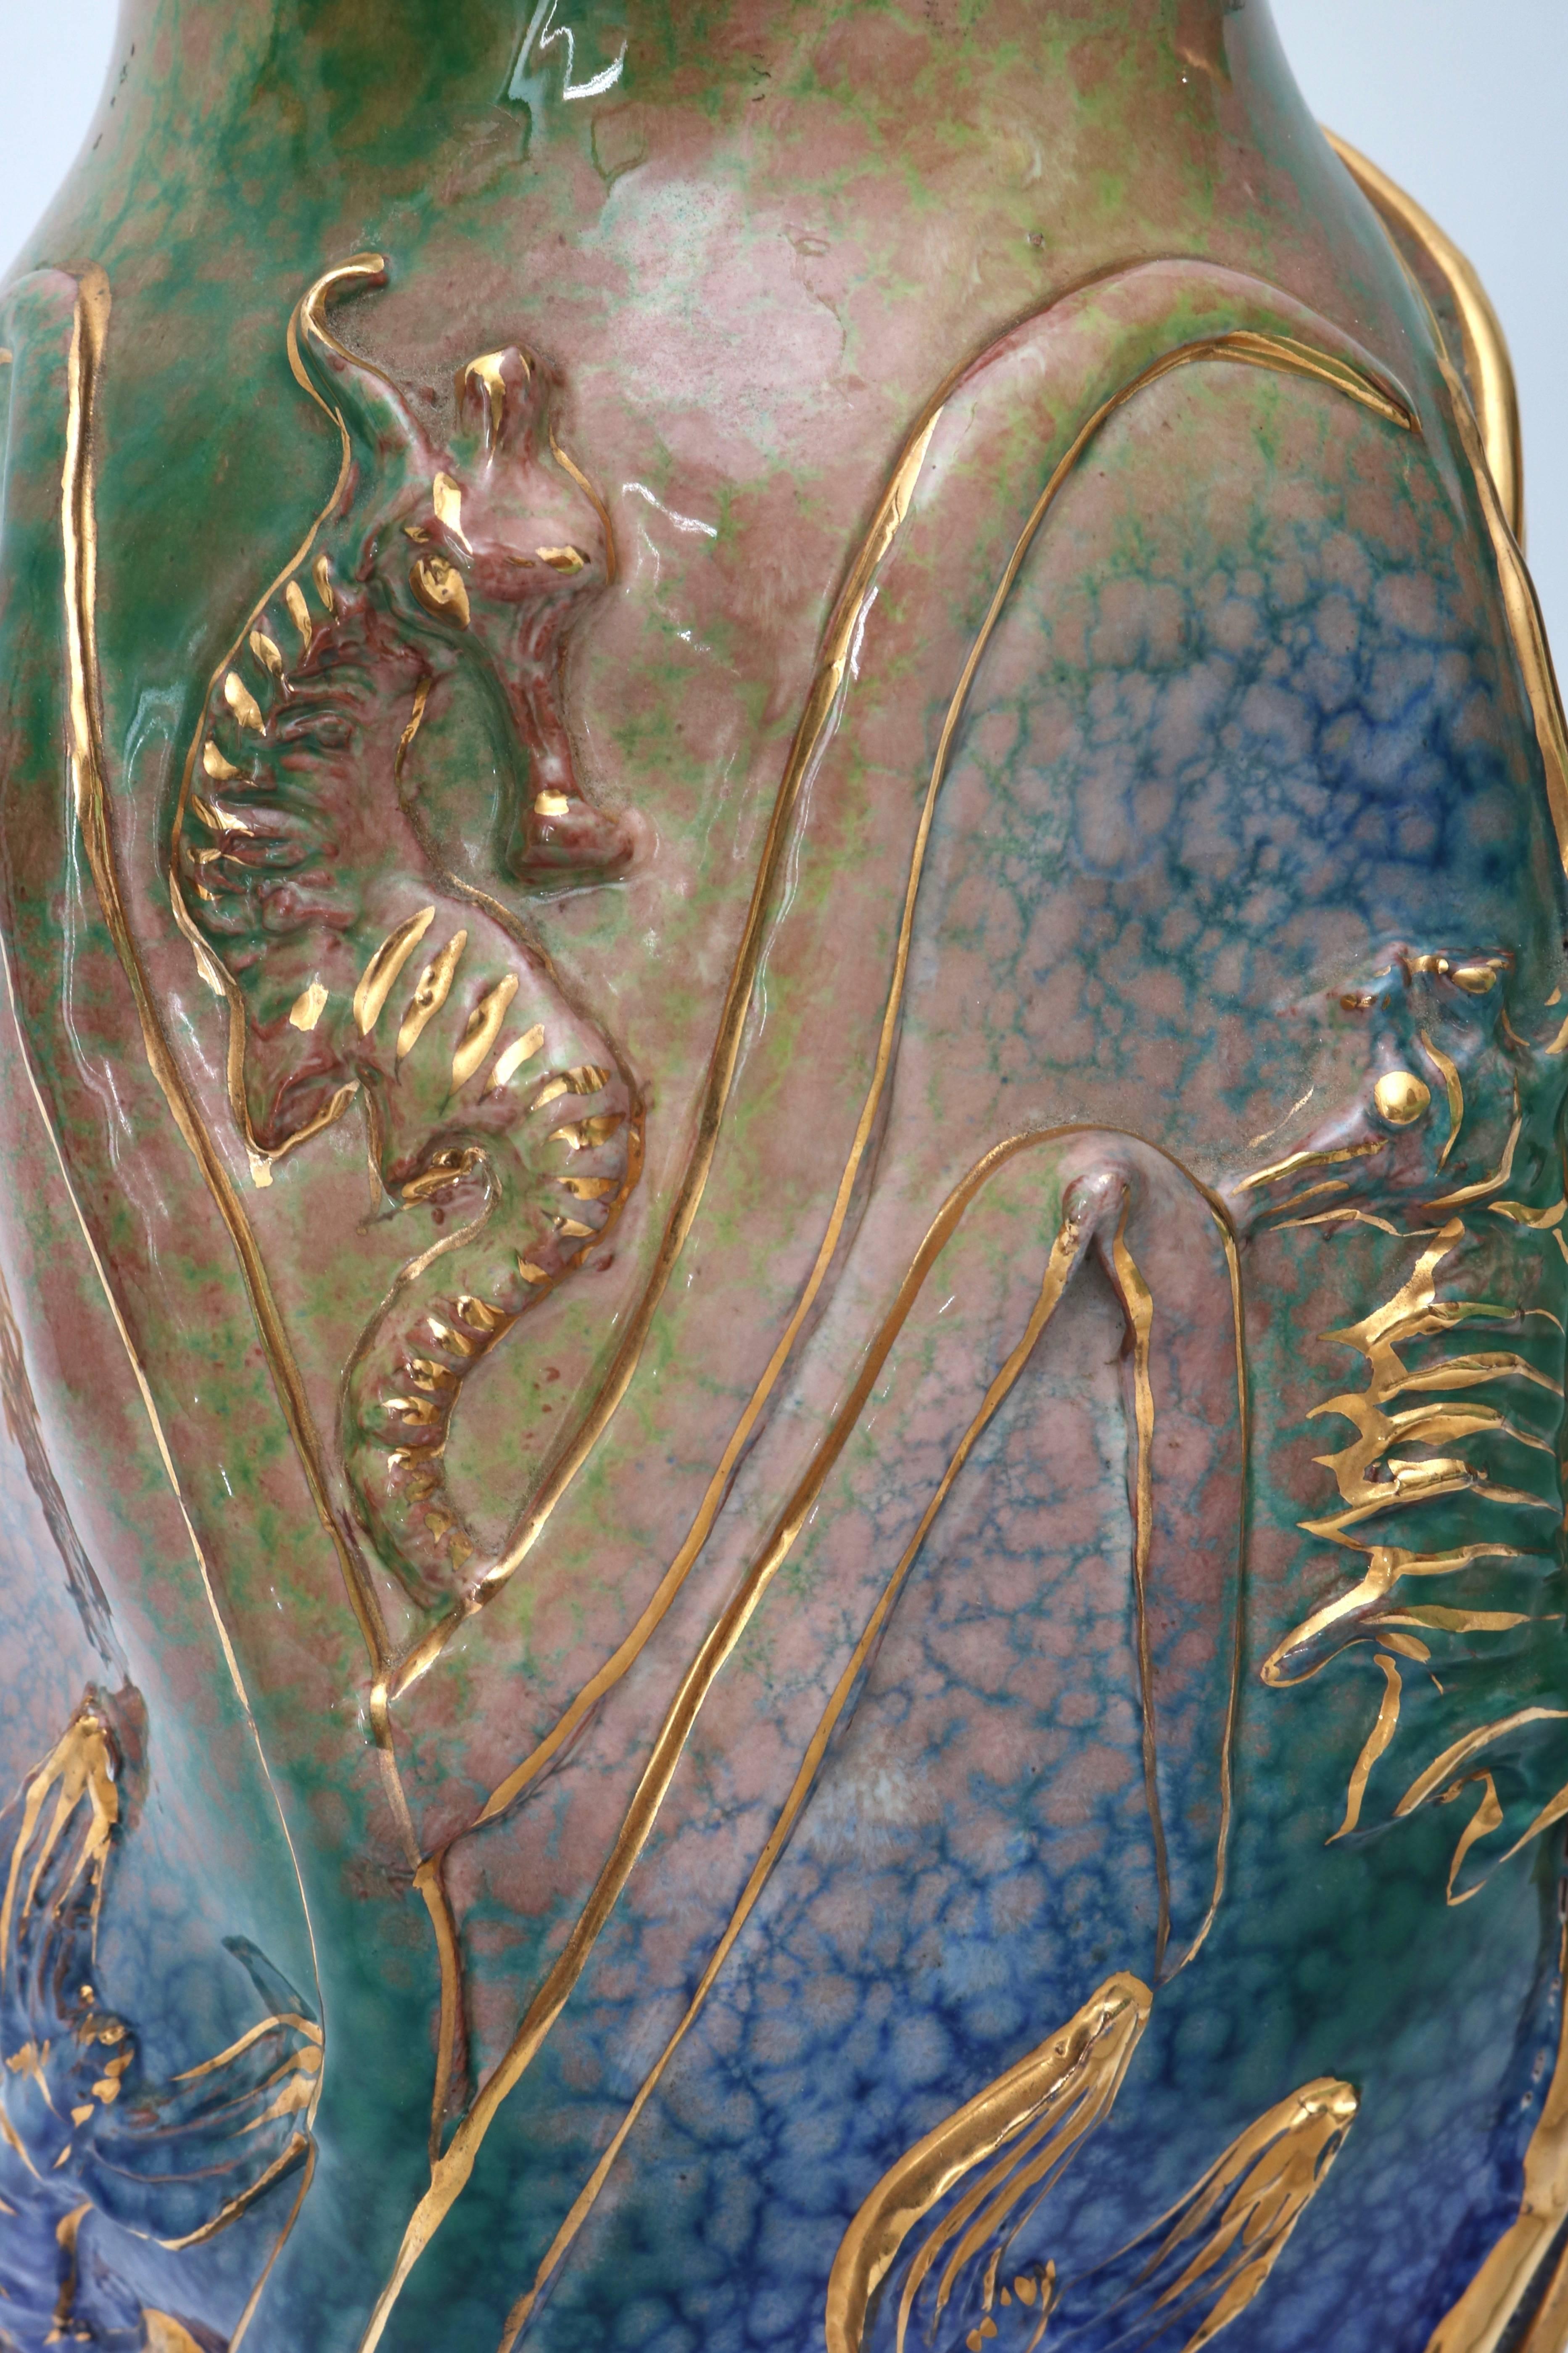 Italian Set of Two Gio Ponti Style Glazed Terra Cotta Vases with Sea Life Motif